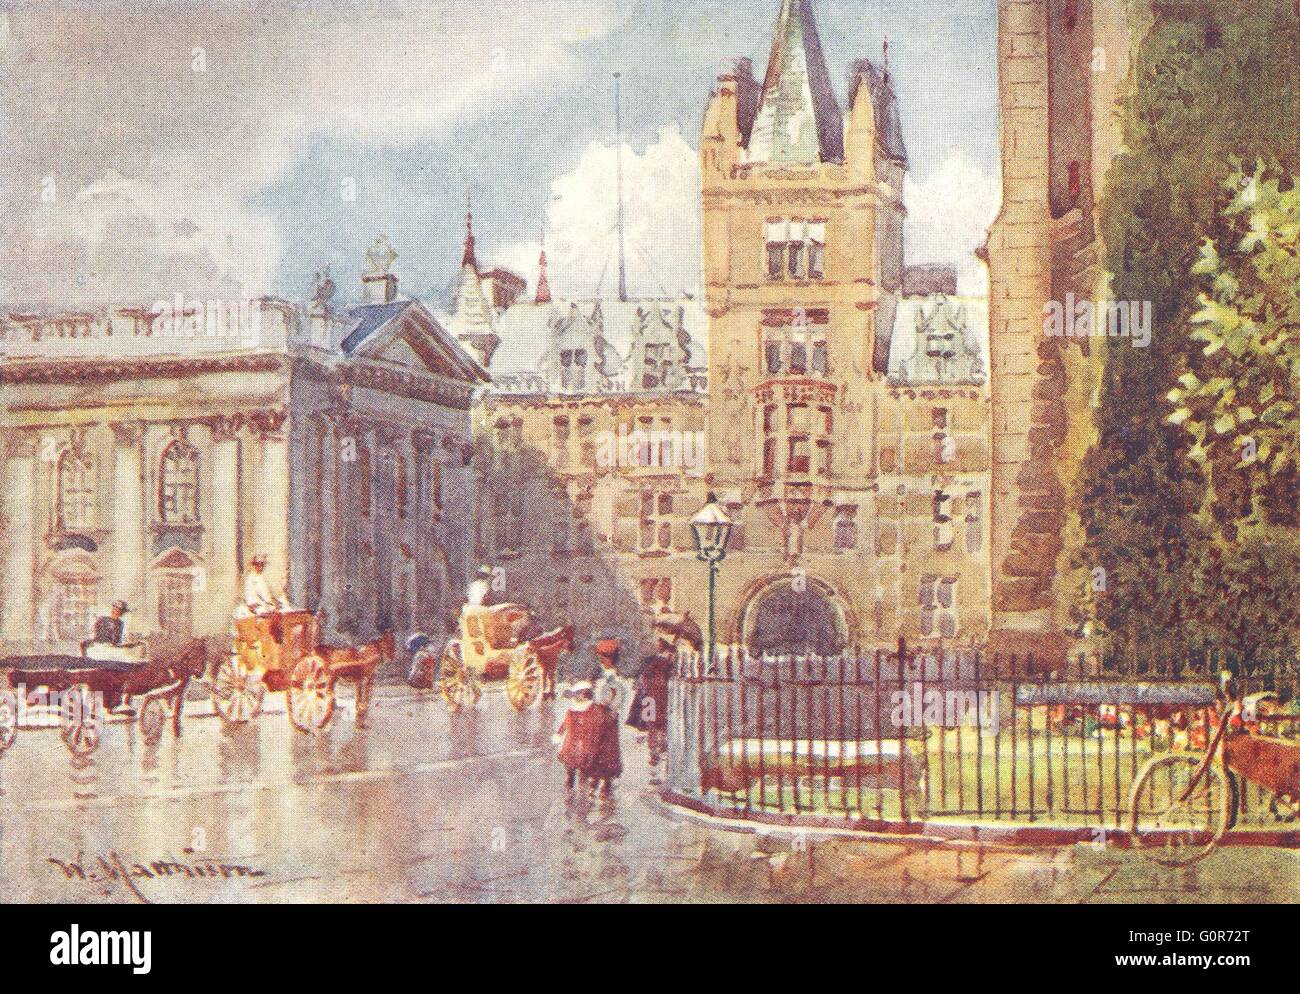 CAMBRIDGE: Caius College & Senate House, antique print 1907 Stock Photo